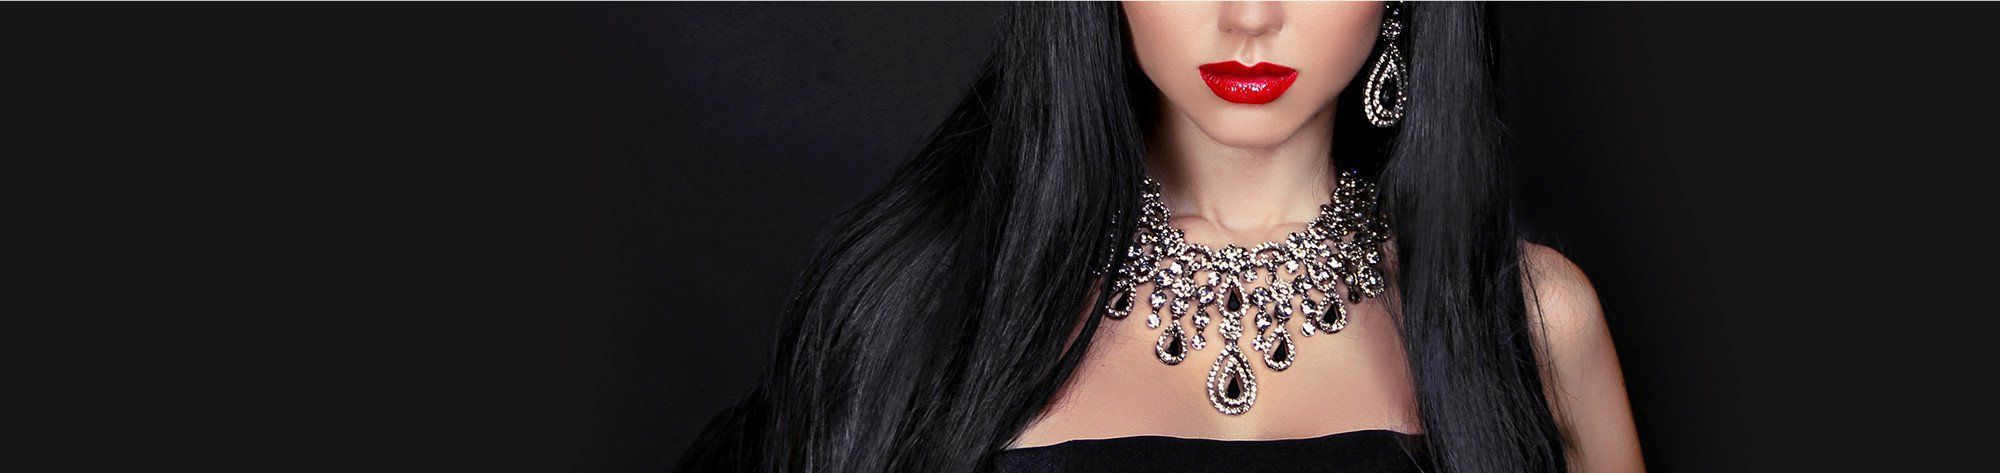 Buy Black Necklace in Houston